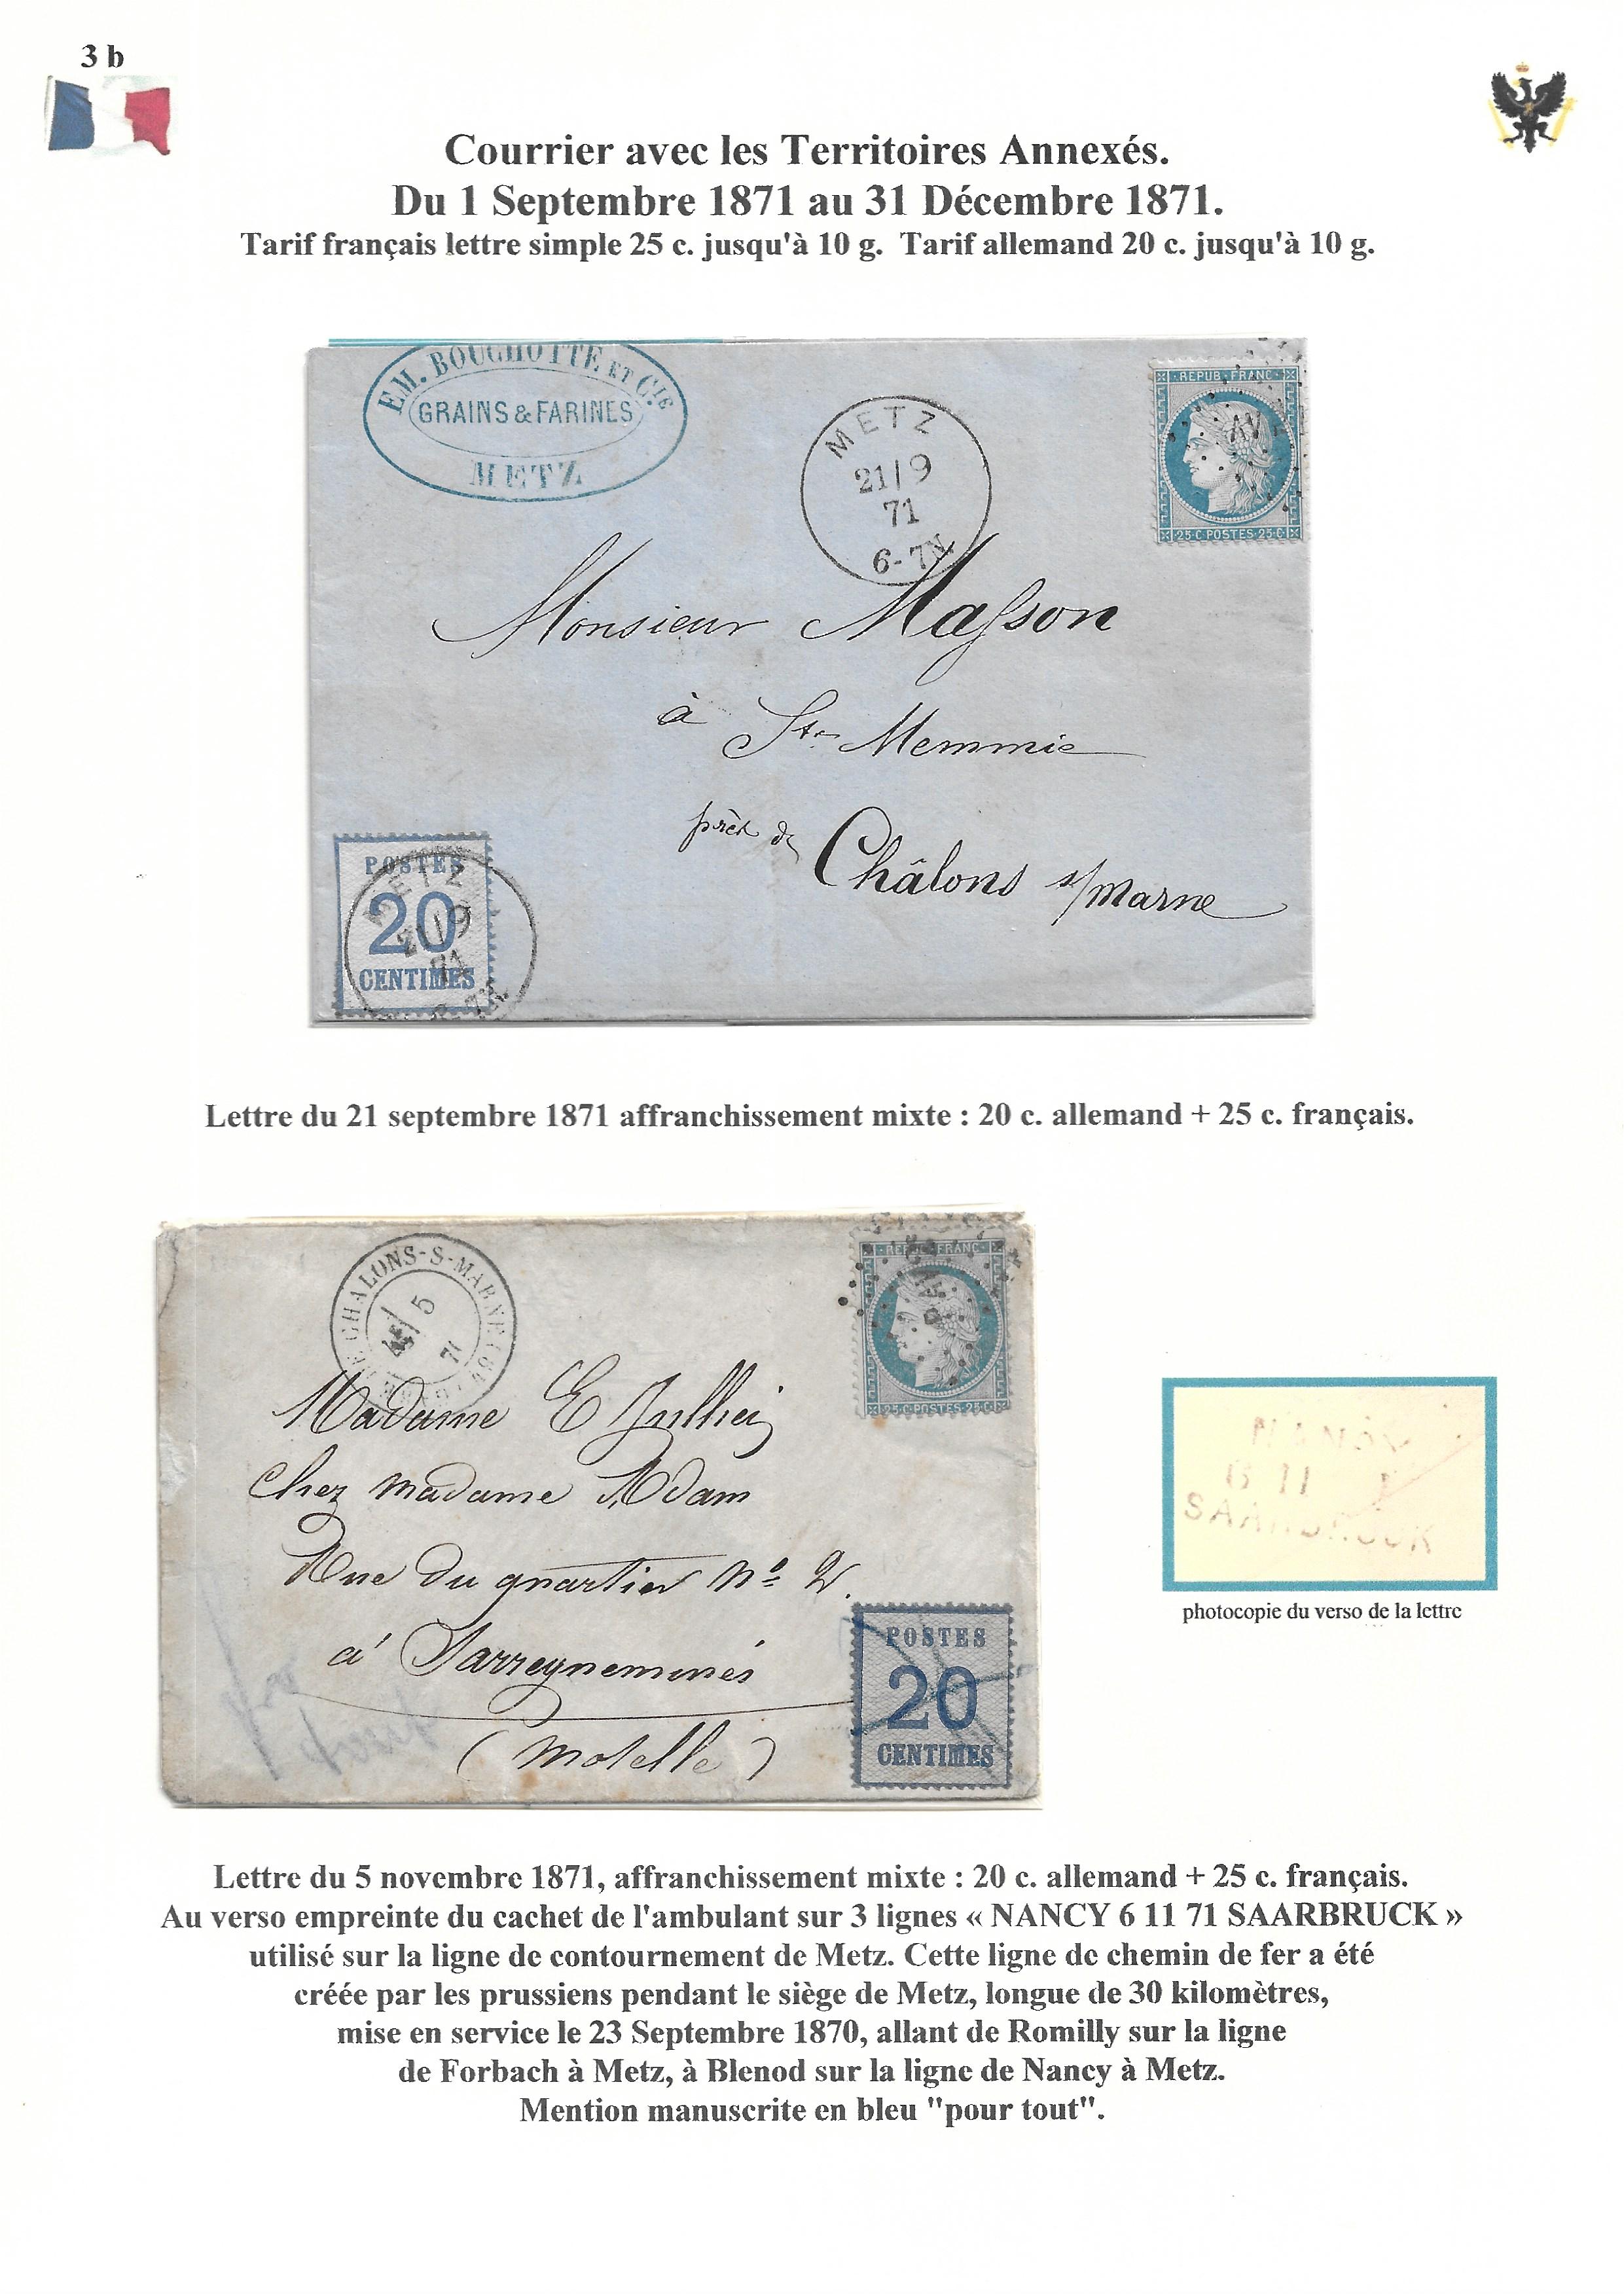 Occupation Prussienne dans la Marne 1870-1872 : Cons��quences sur les relations postales p. 36